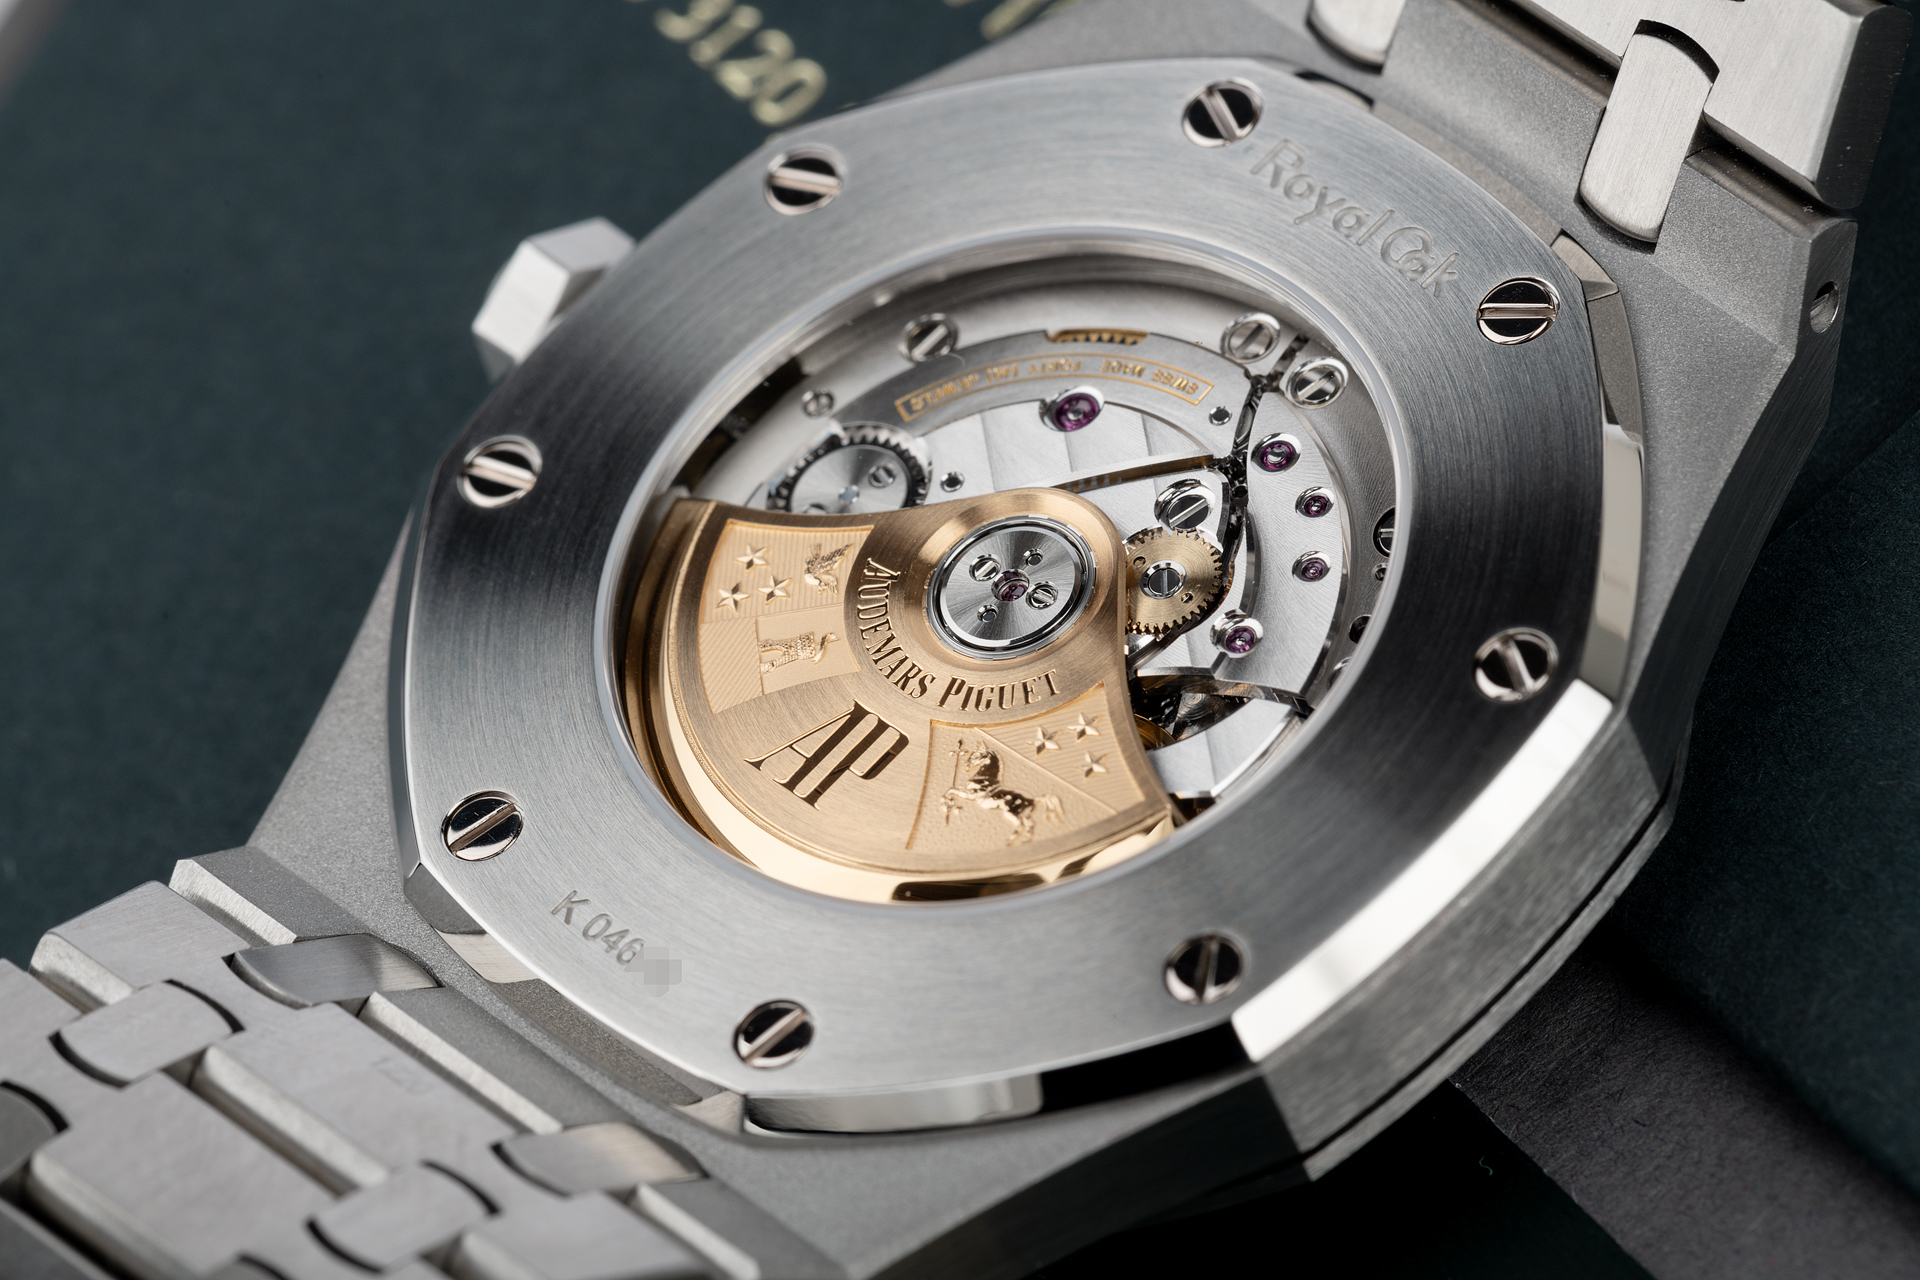 Audemars Piguet Royal Oak Watches | ref 15400ST.OO.1220ST.01 | Under AP ...